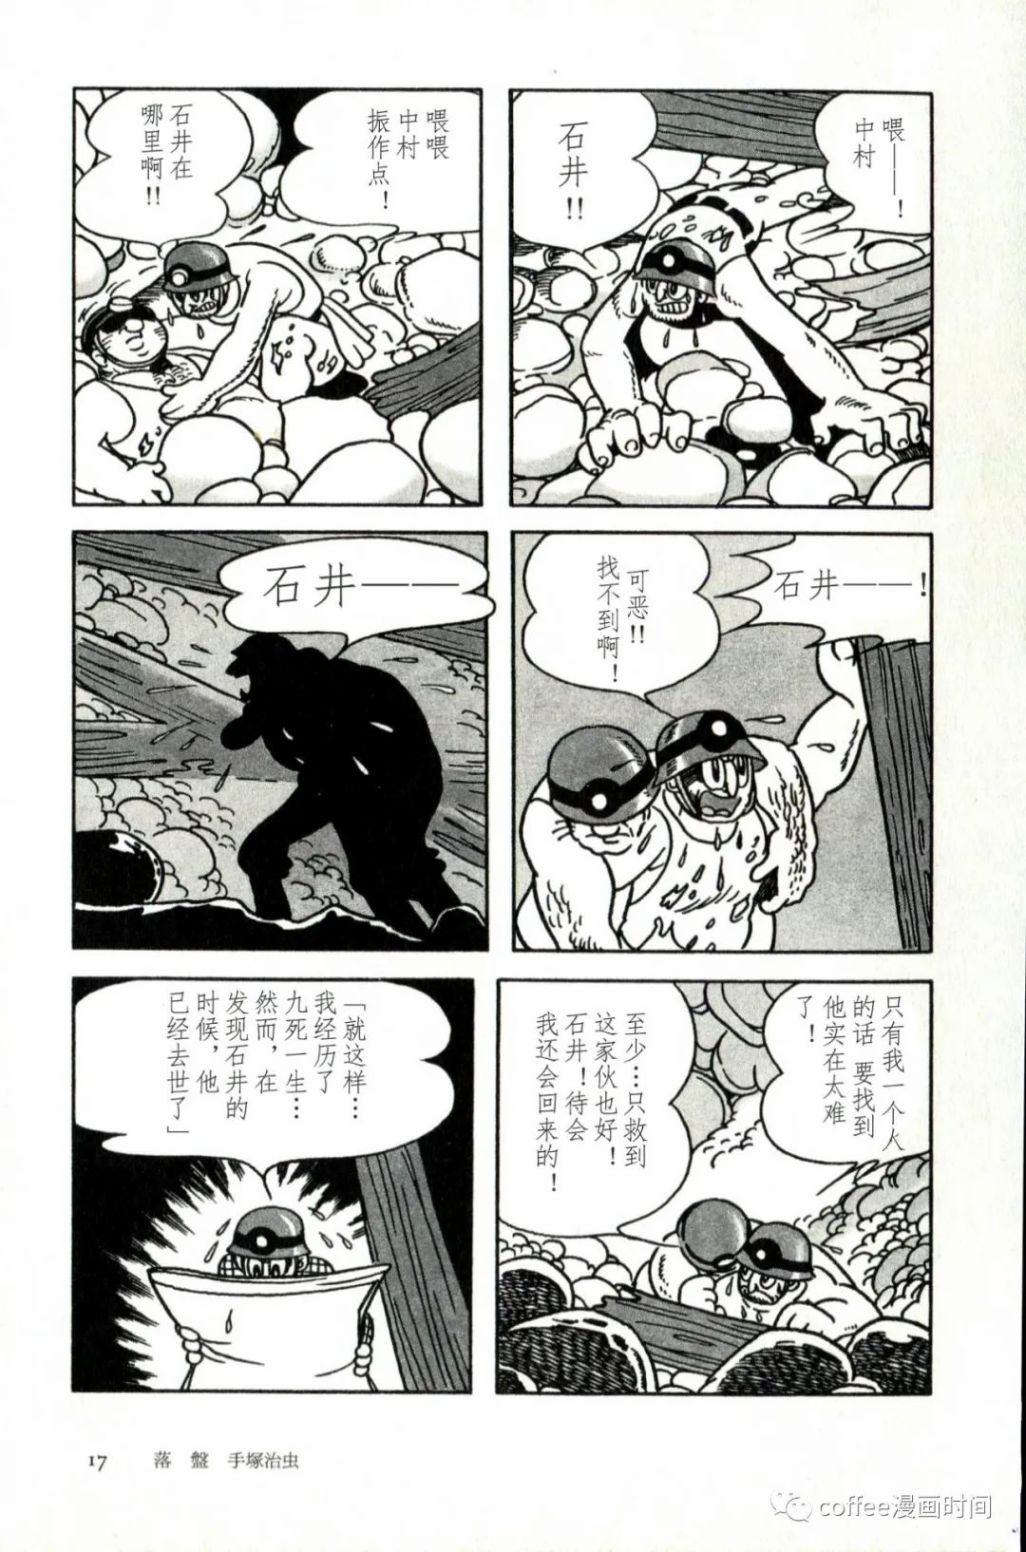 日本短篇漫畫傑作集 - 手冢治虫《落盤》 - 3